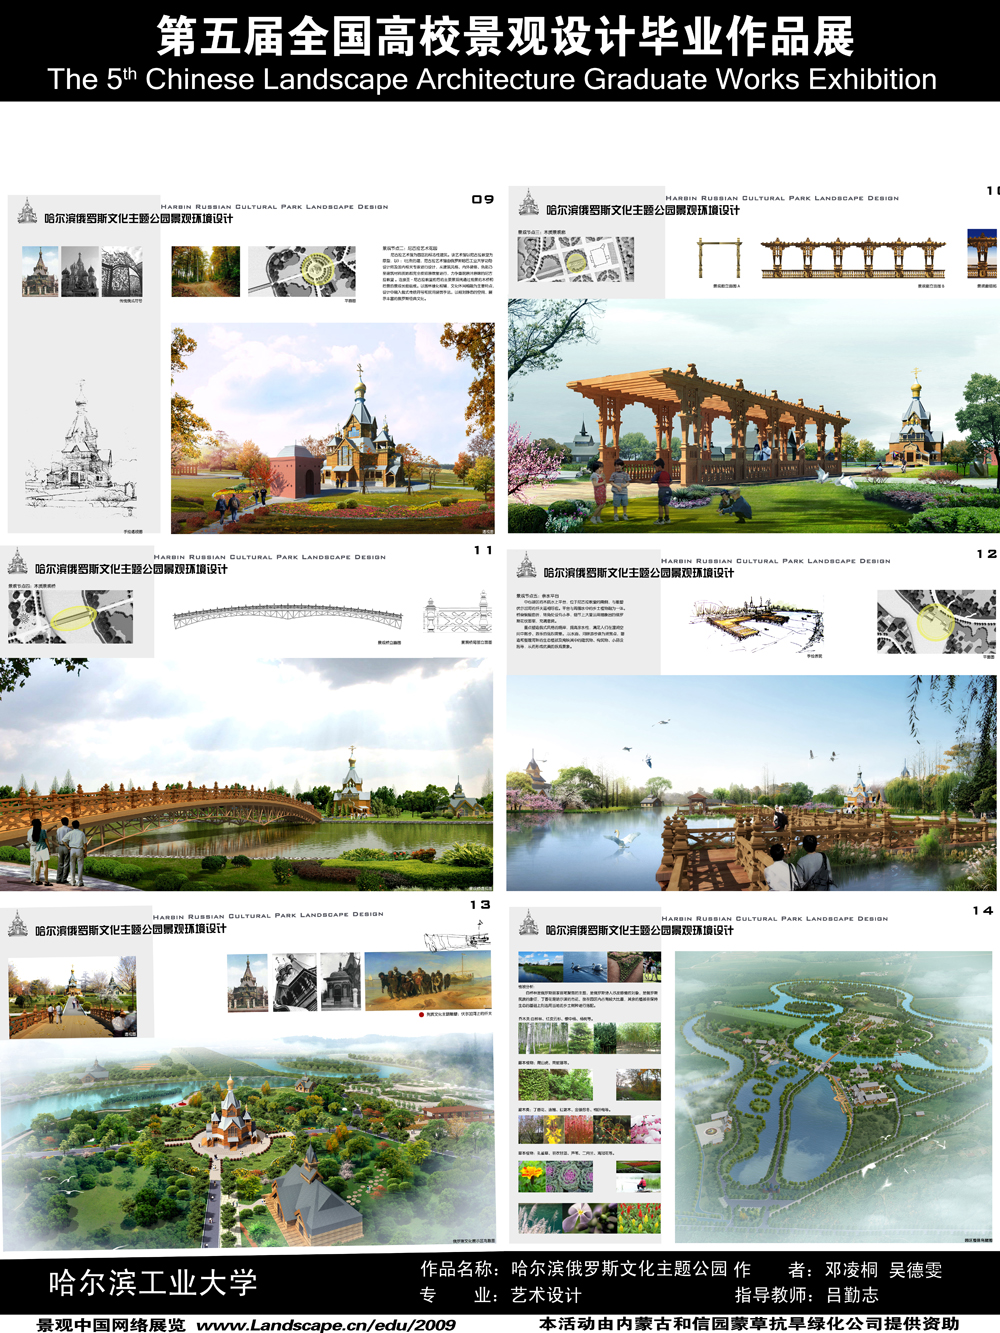 哈尔滨俄罗斯文化主题公园景观环境艺术设计-2